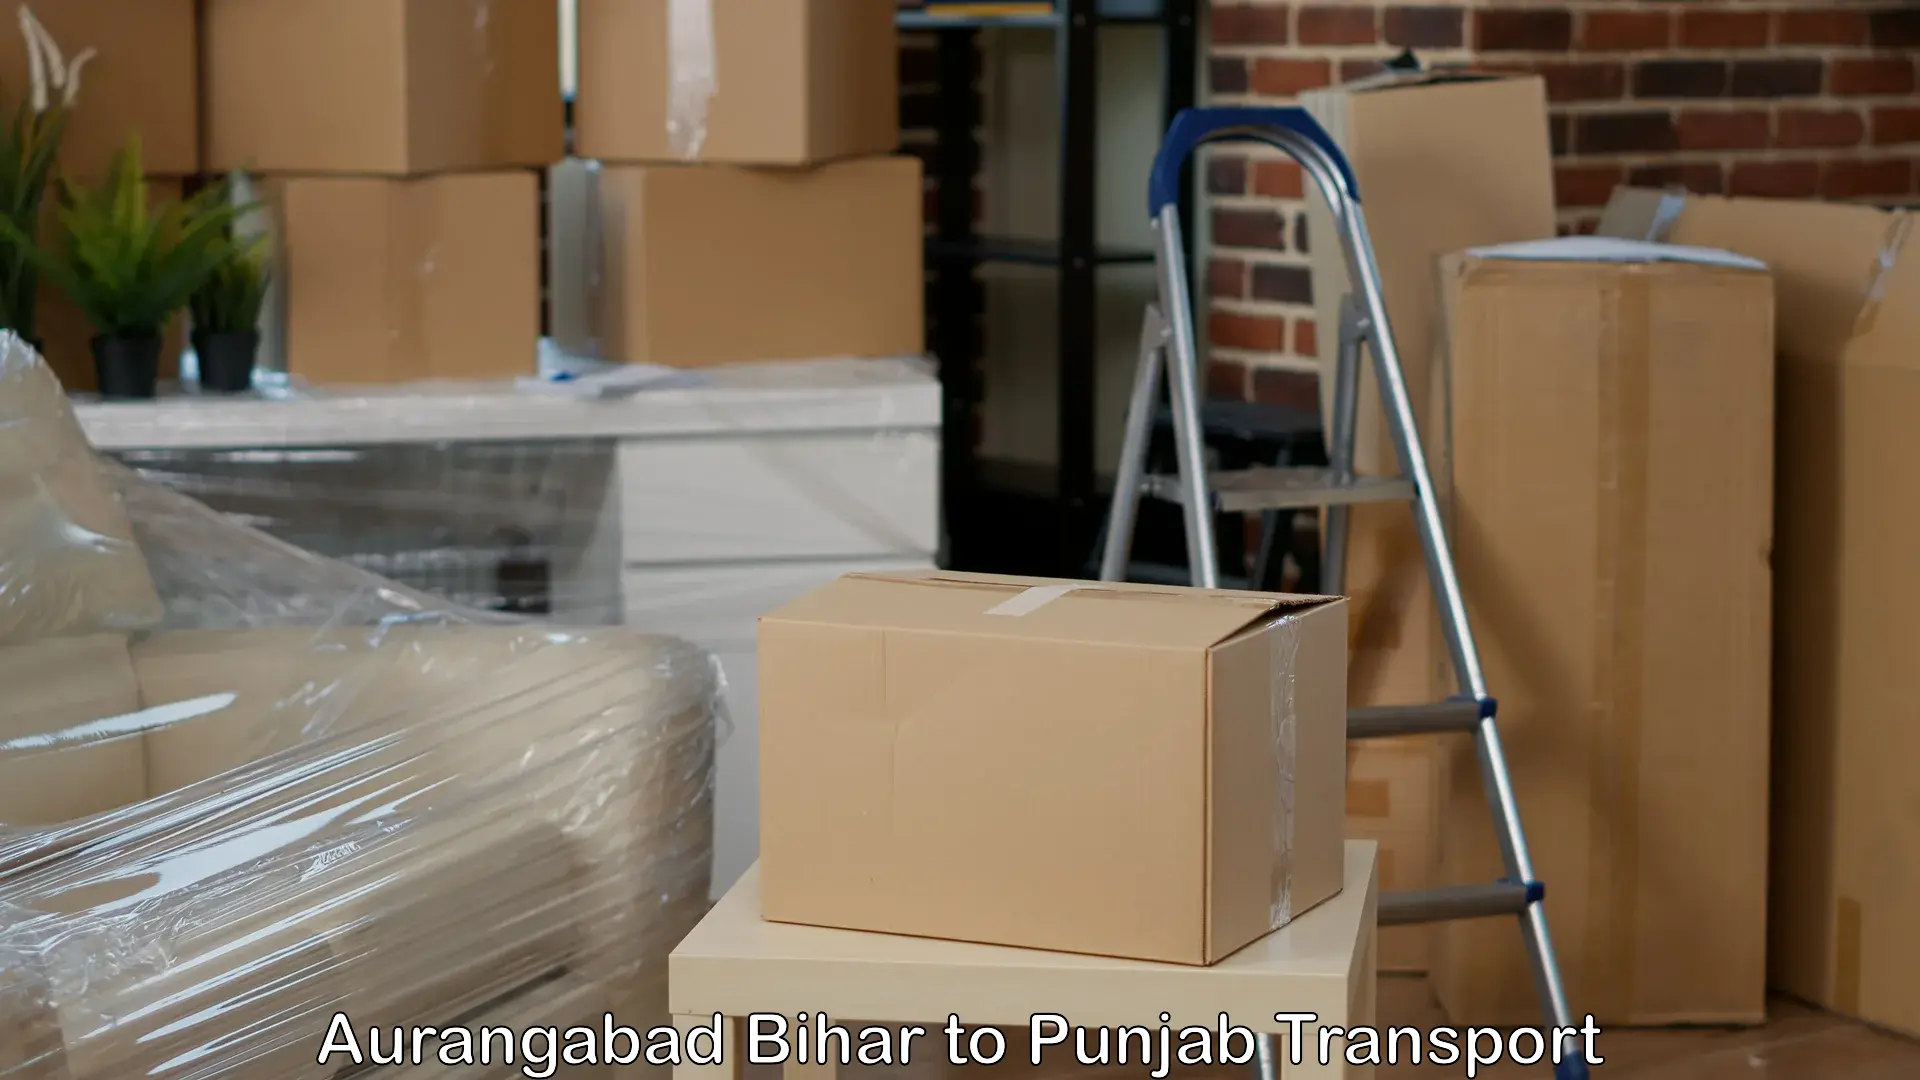 Shipping services Aurangabad Bihar to Barnala